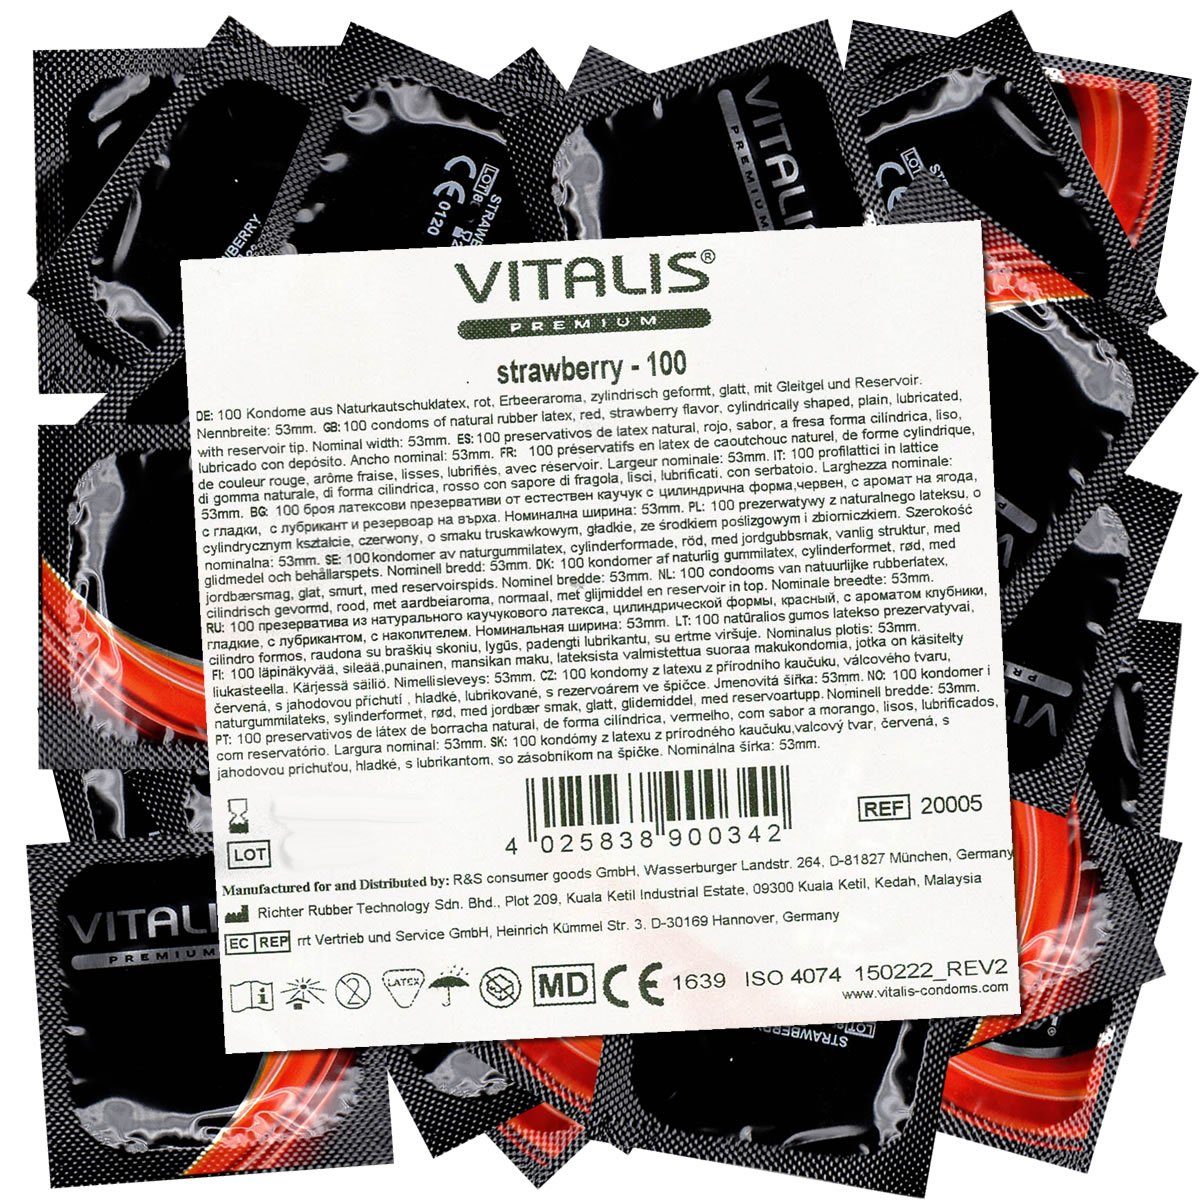 VITALIS Kondome PREMIUM Strawberry (rote Kondome für Oralverkehr) große Packung mit, 100 St., Kondome mit Erdbeer-Aroma, zuverlässig, sicher und angenehm im Gebrauch